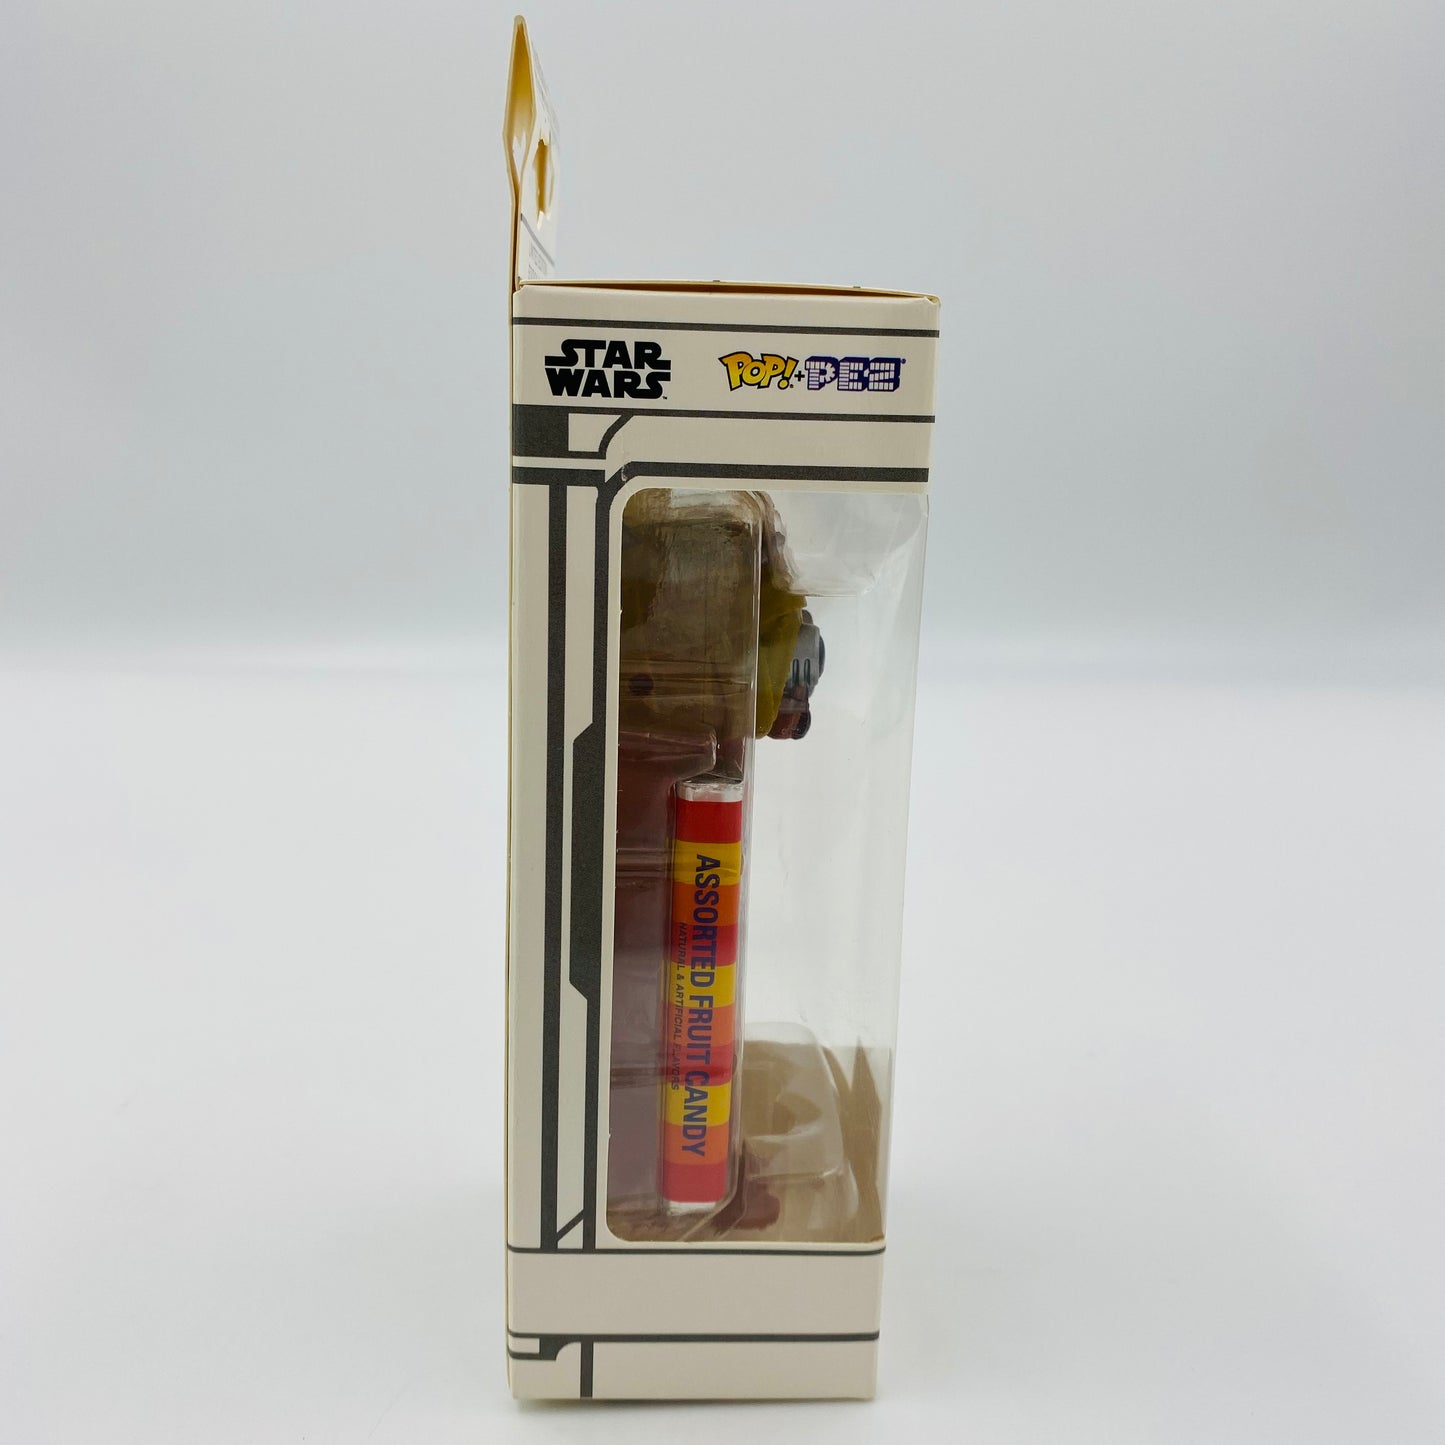 Star Wars Tusken Raider Pop! + PEZ dispenser (2018) boxed